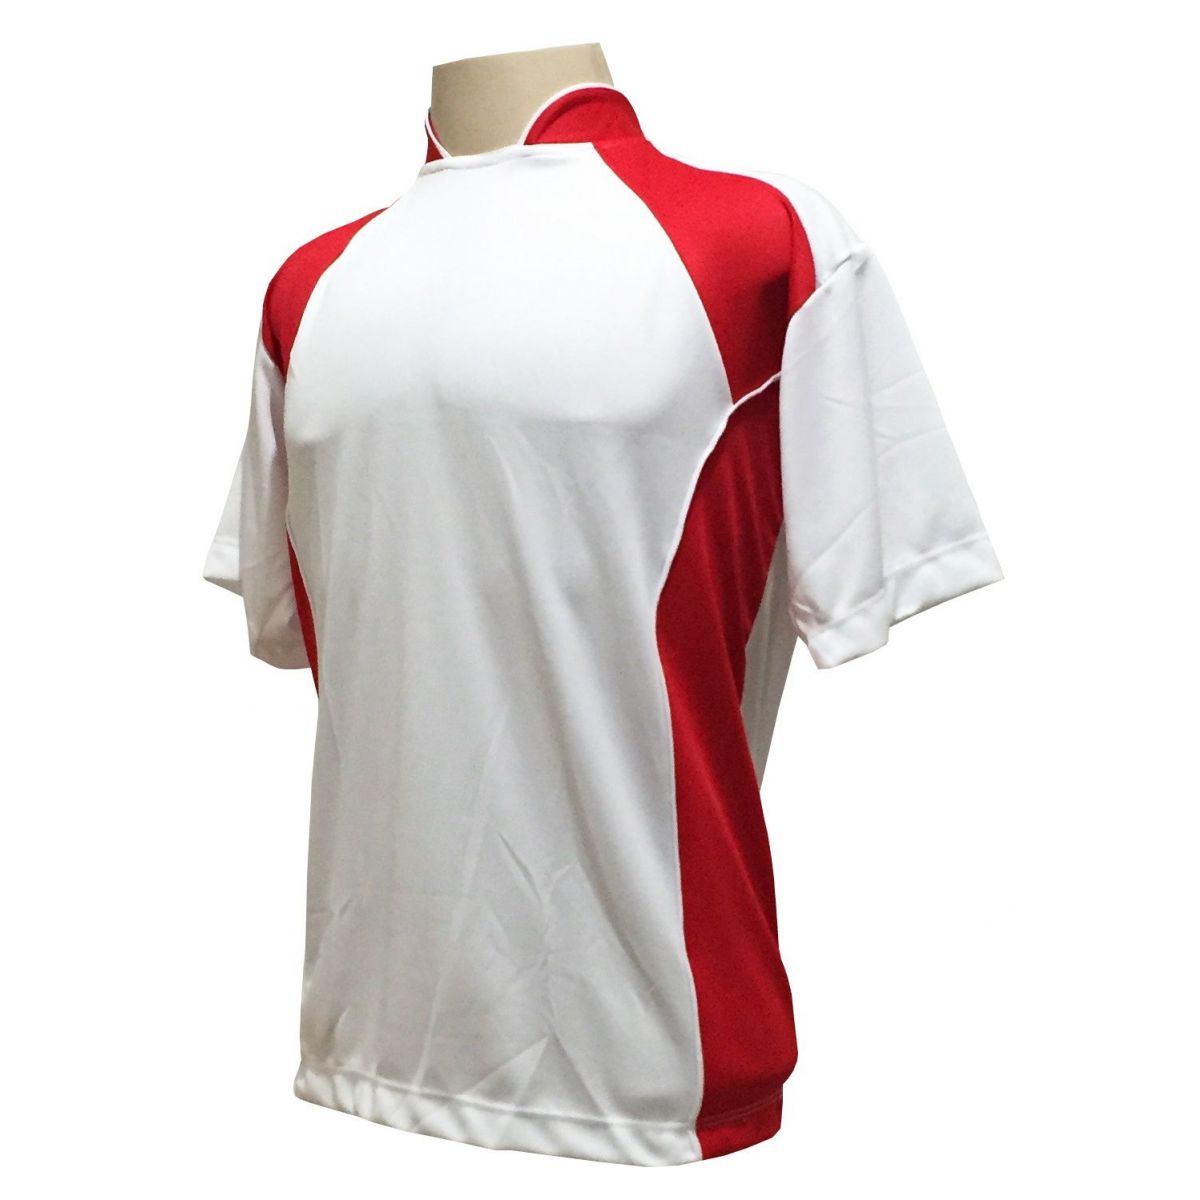 Uniforme Esportivo Completo Modelo Suécia 14+1 (14 Camisas Branco/Vermelho + 14 Calções Modelo Copa Vermelho/Branco + 14 Pares de Meiões Vermelhos + 1 Conjunto de Goleiro) + Brindes